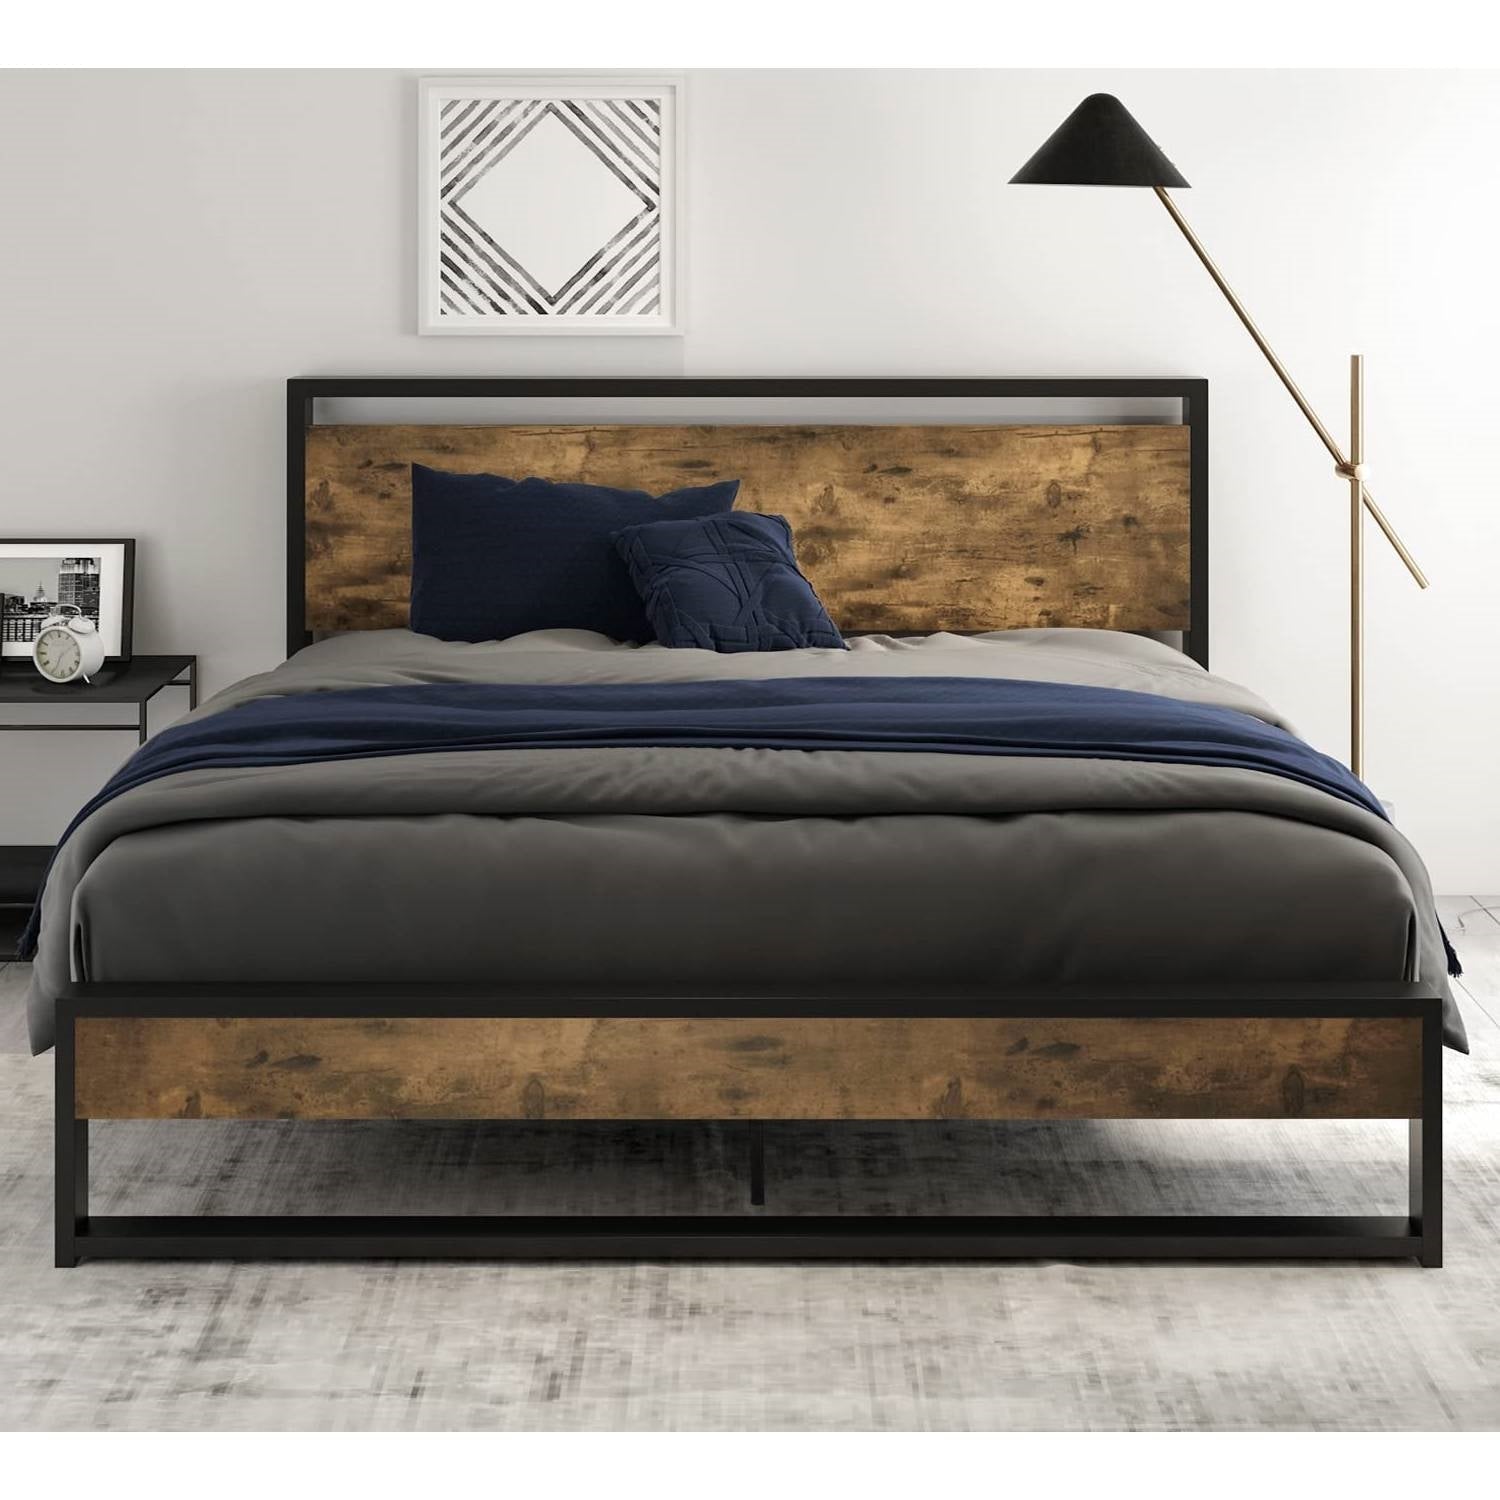 Bedroom > Bed Frames > Platform Beds - Full Size Metal Wood Platform Bed Frame With Industrial Headboard